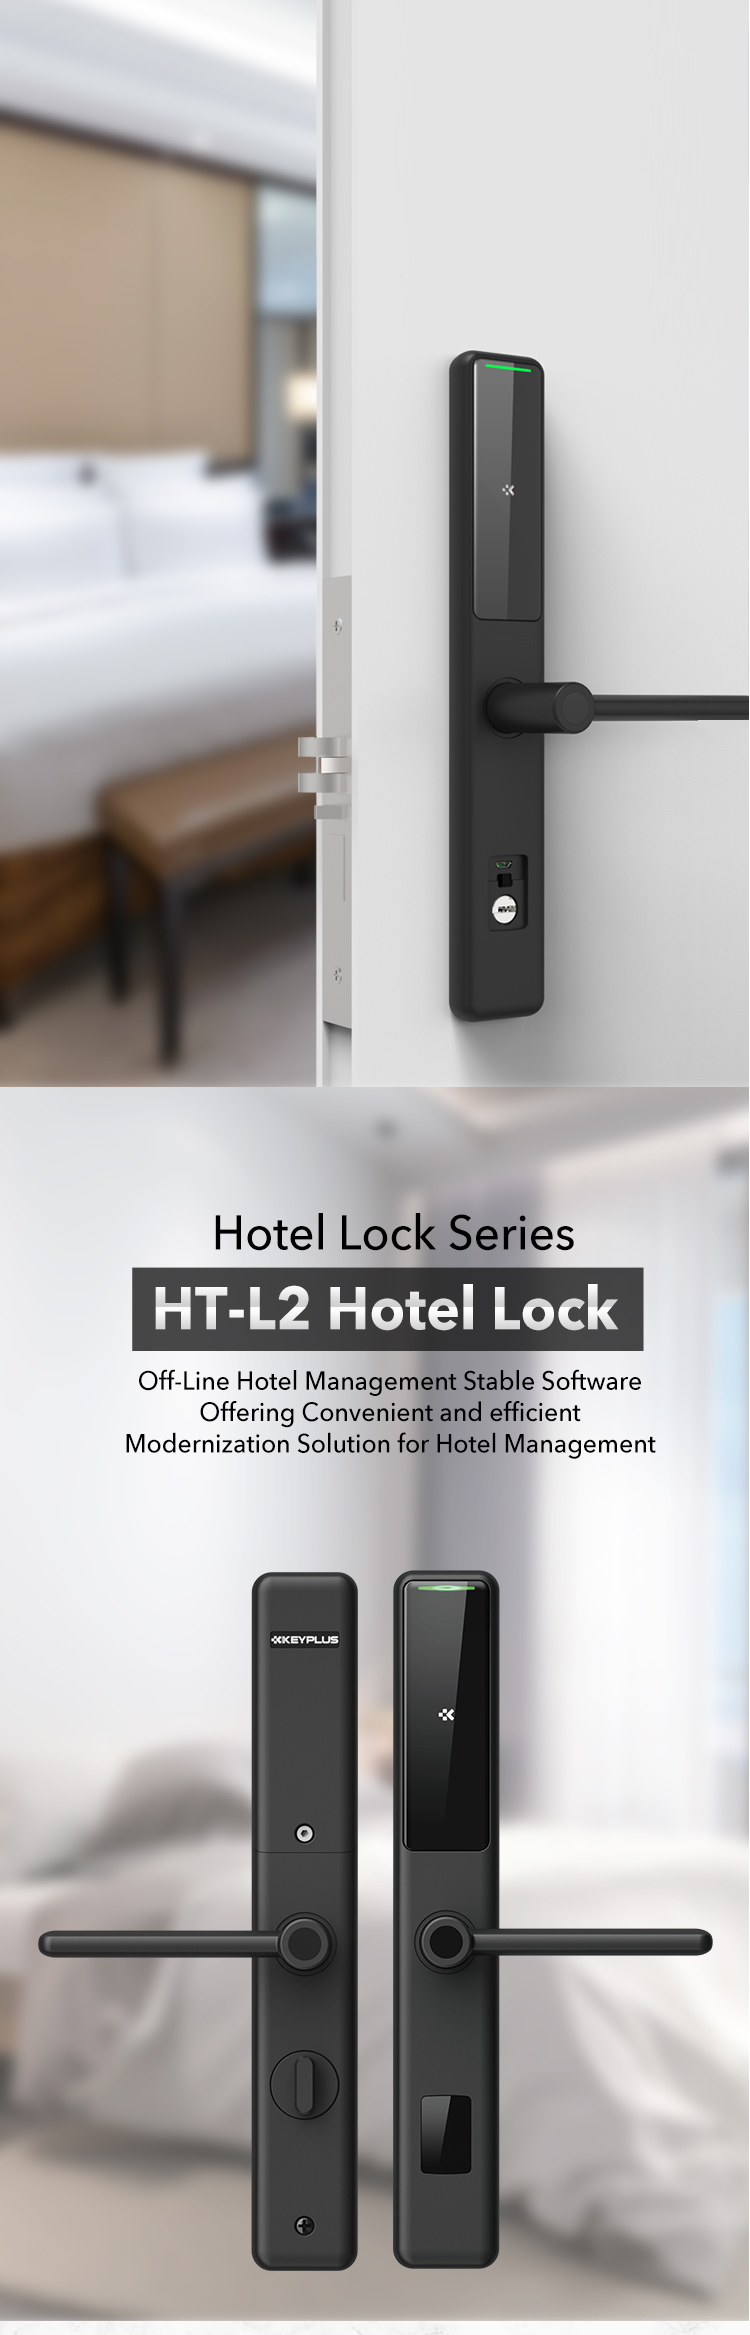 HT-L2 Mifare Rfied Key Card Hotel Lock